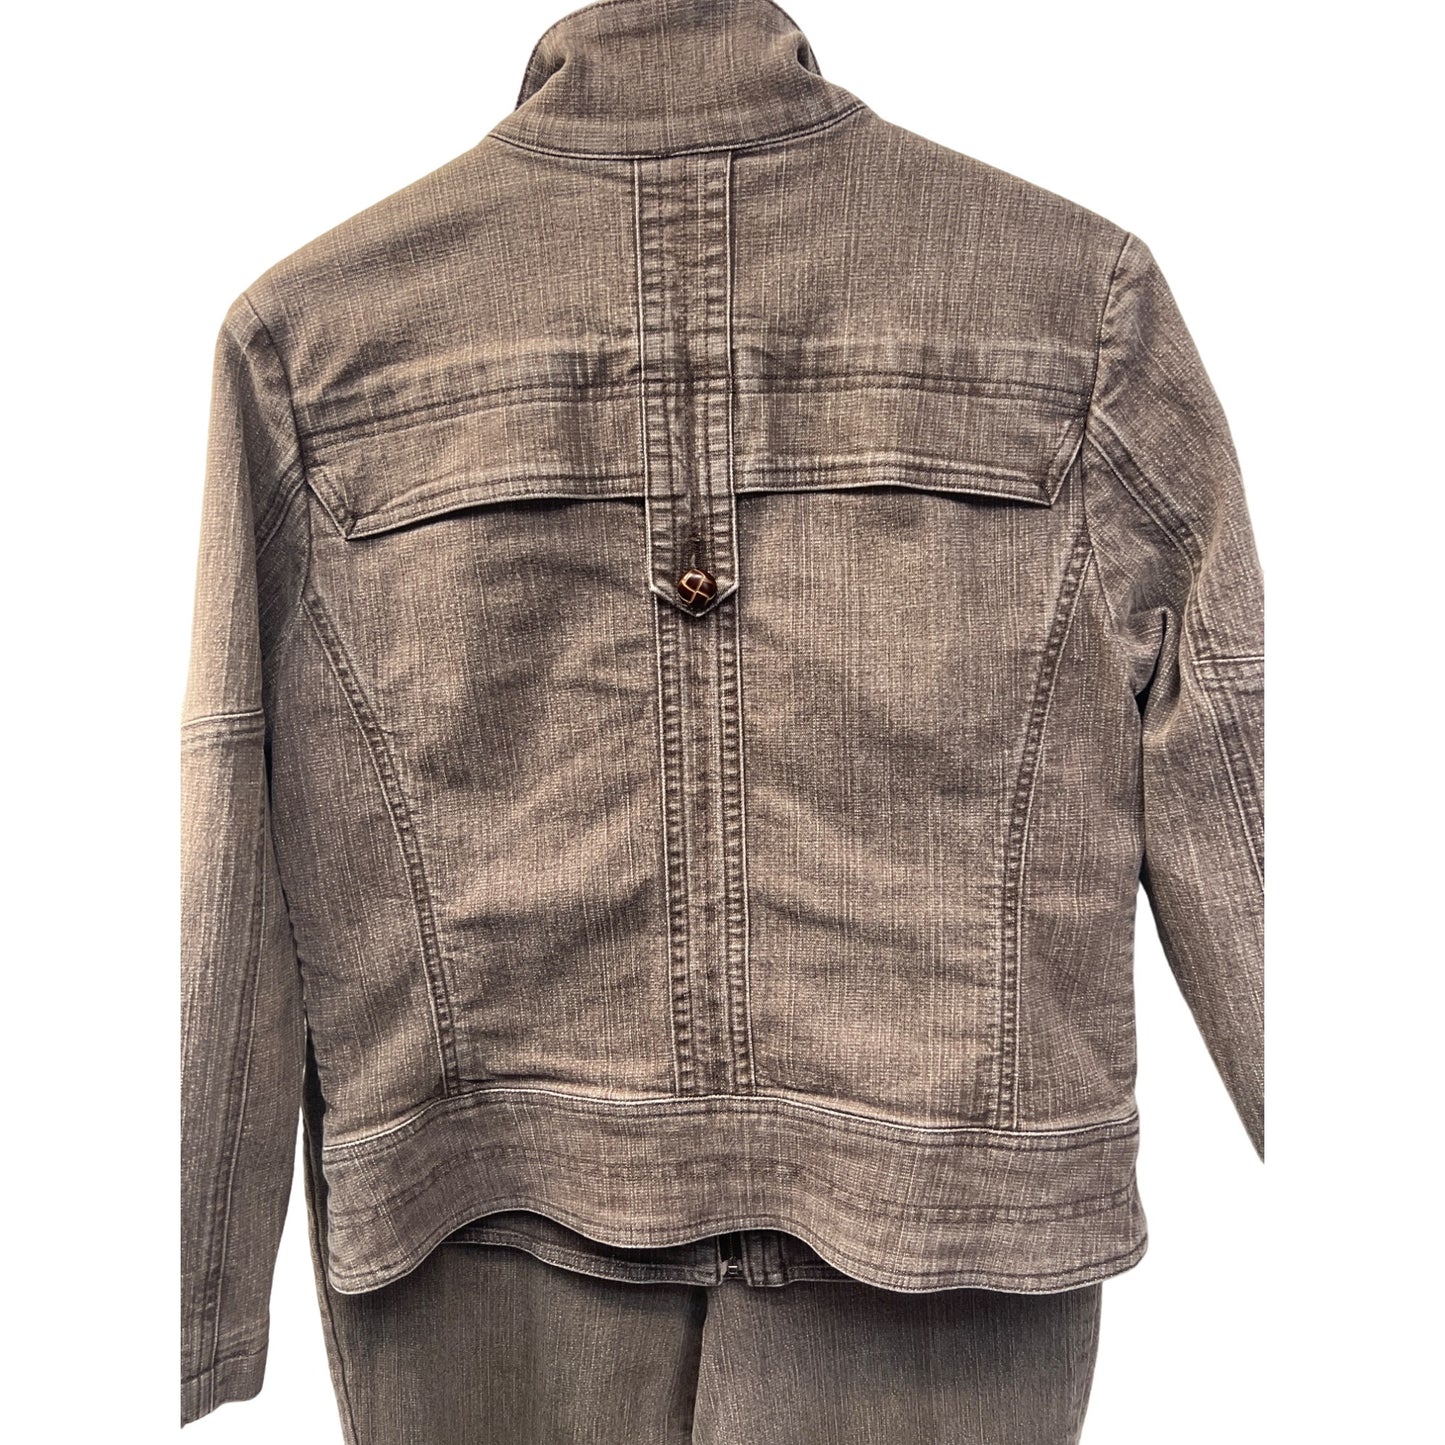 FDJ Vintage 90's Brown Denim Jacket and Jeans Set